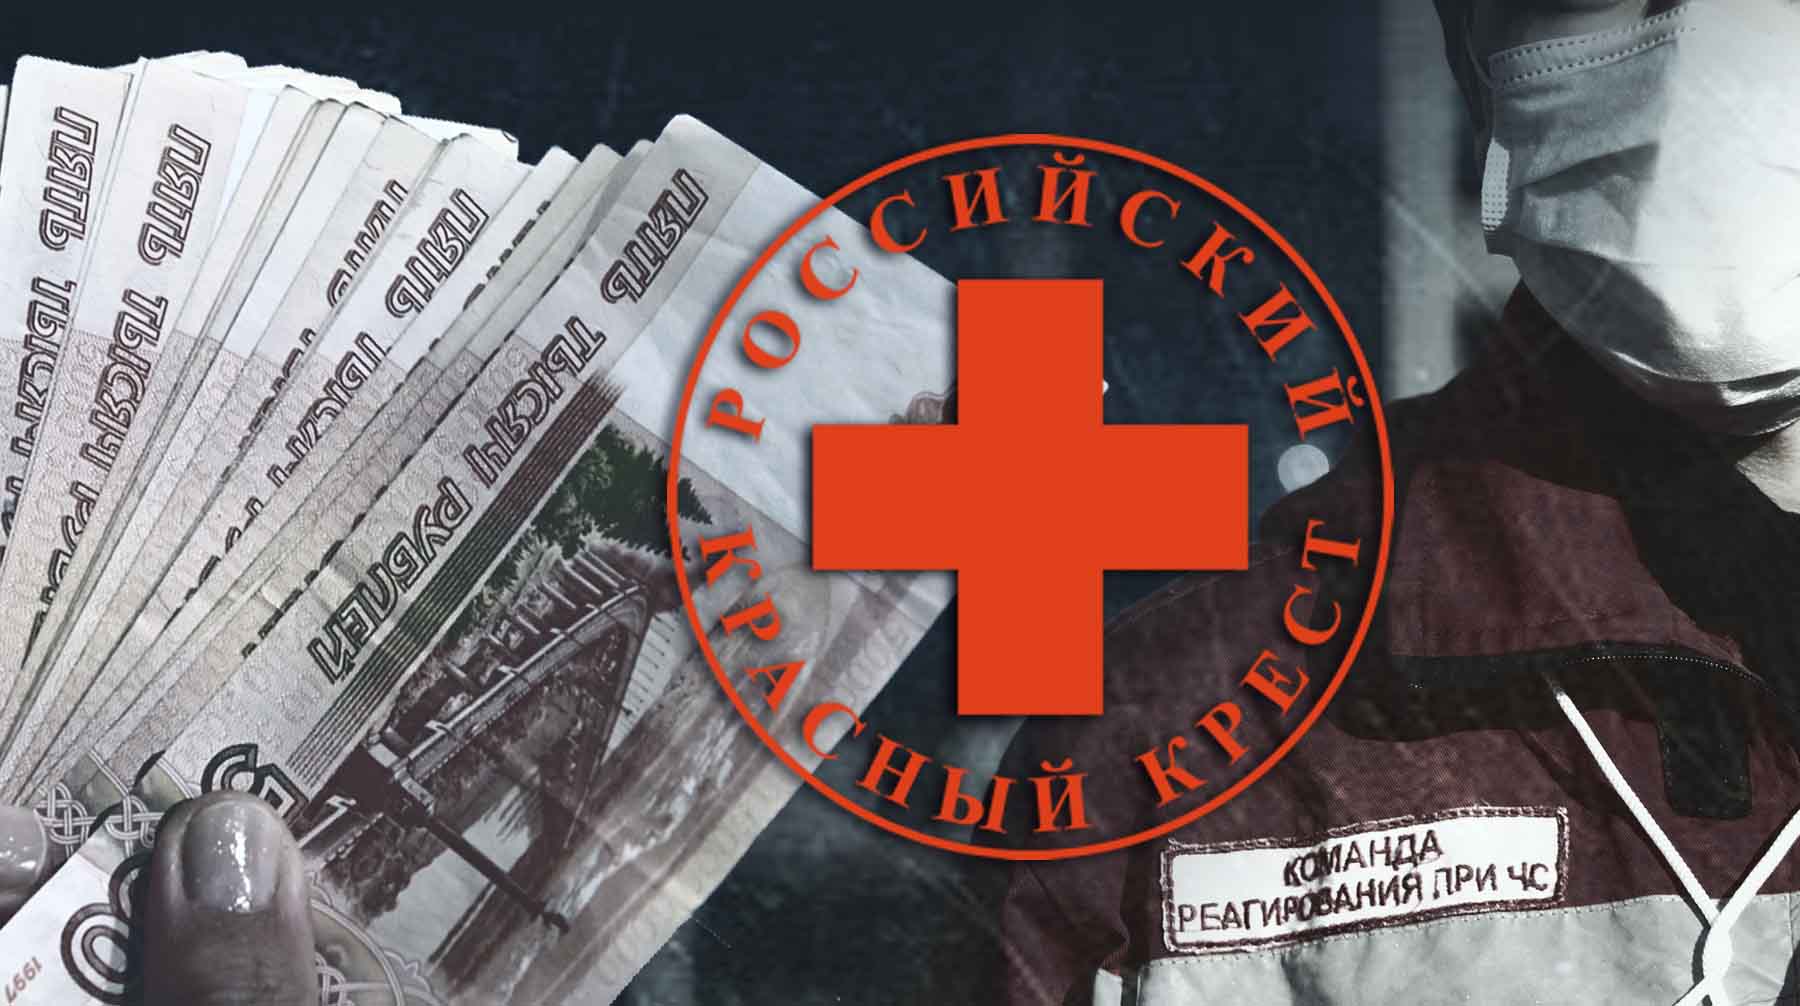 Благотворительная организация собрала 1,2 миллиарда рублей Коллаж: Daily Storm